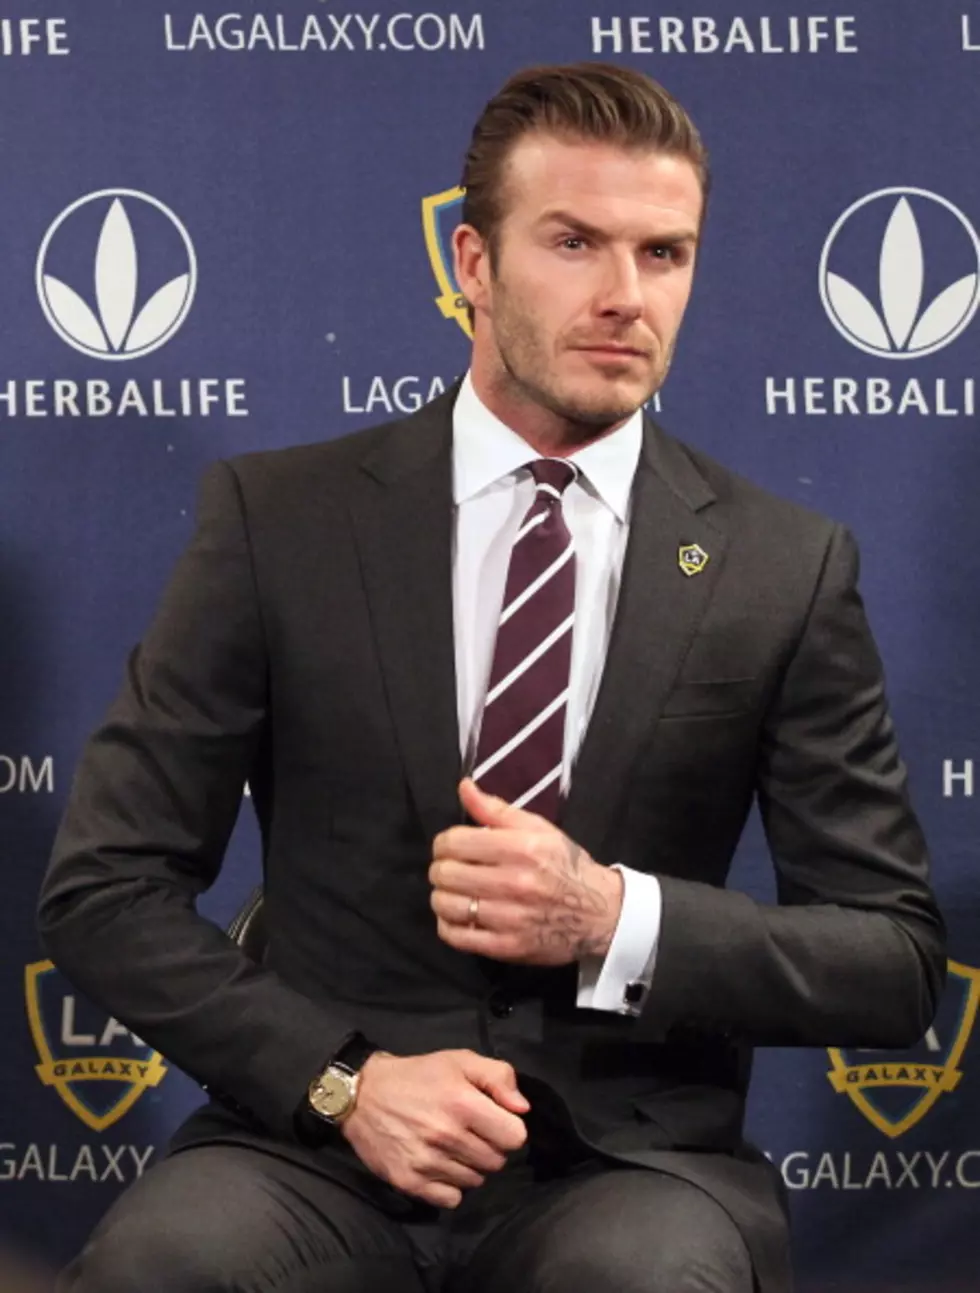 David Beckham Hottest Male Athlete (photo)